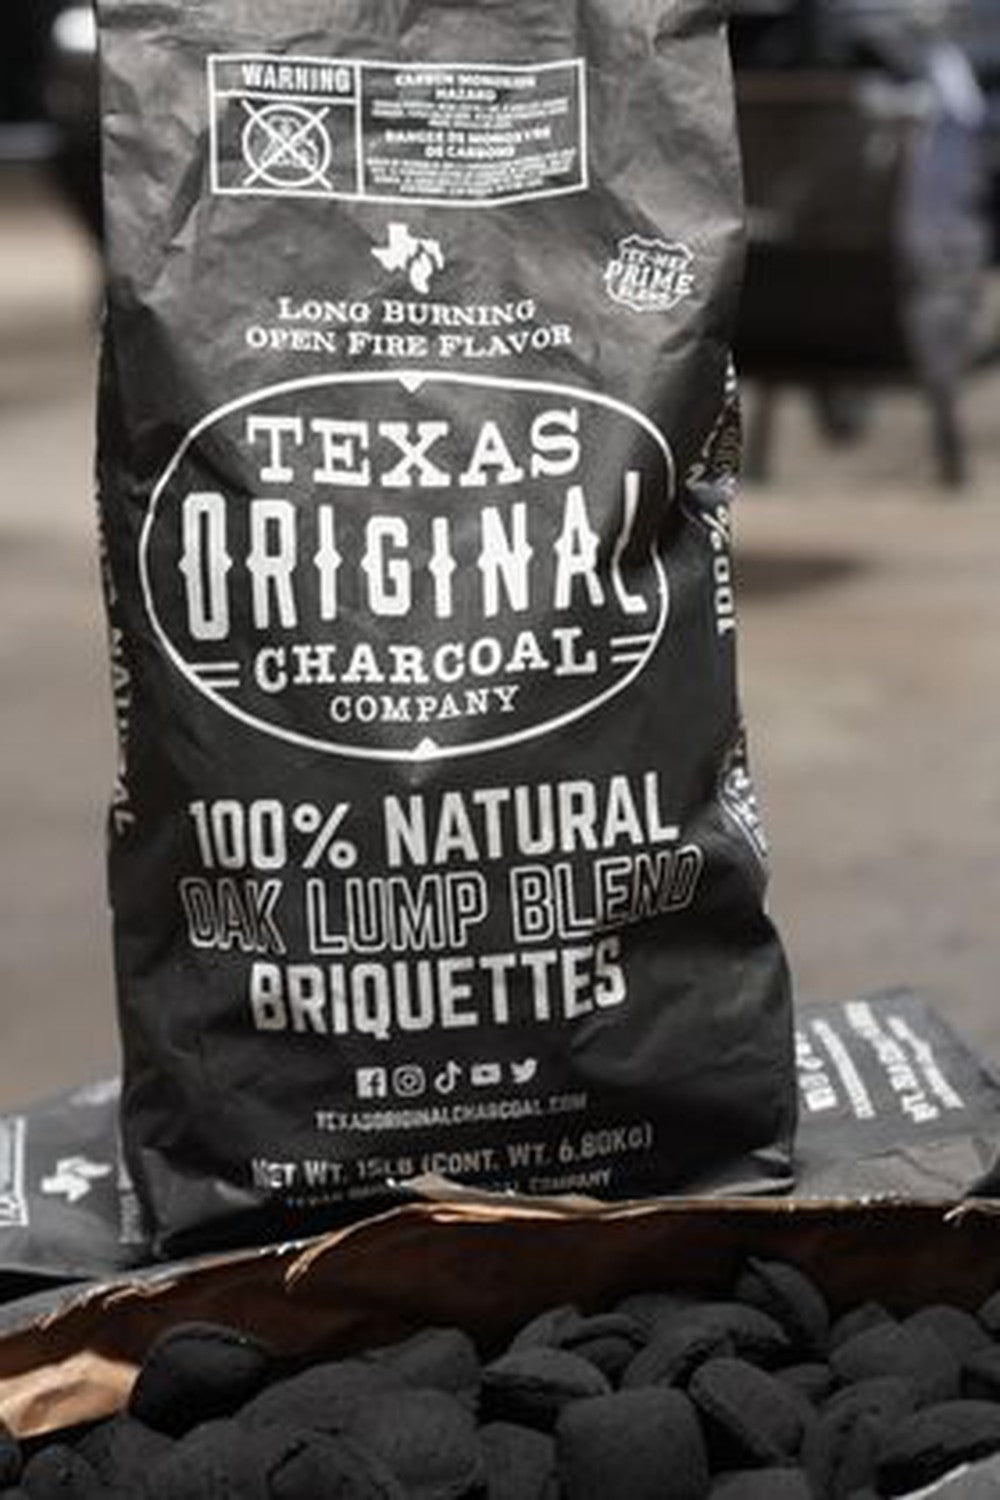 Texas Original Charcoal -100% Natural Oak Lump Blend Briquettes Premiun